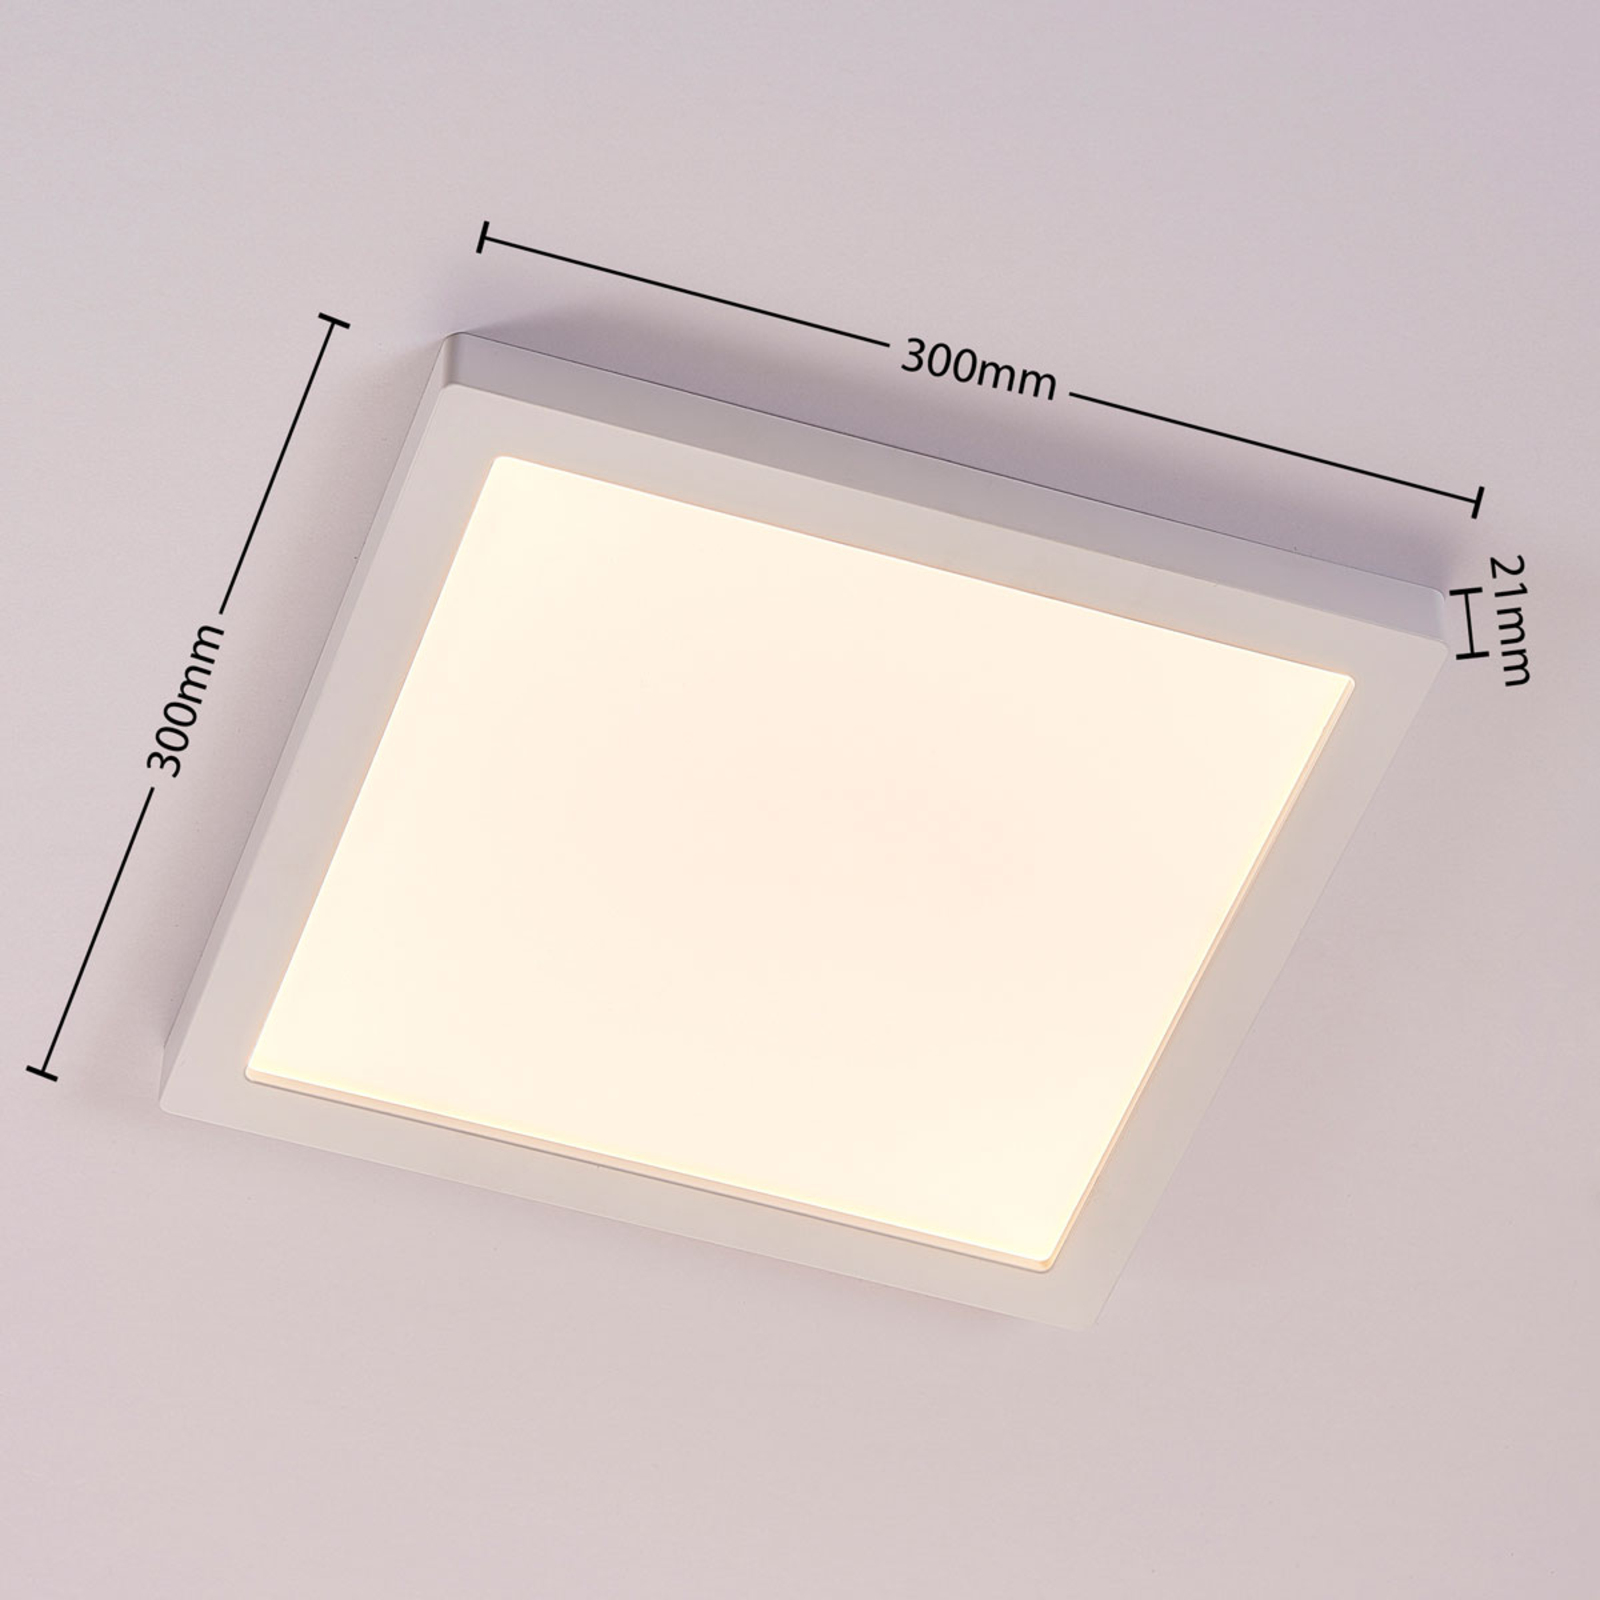 Solvie LED ceiling light, white, angular, 30 x 30 cm